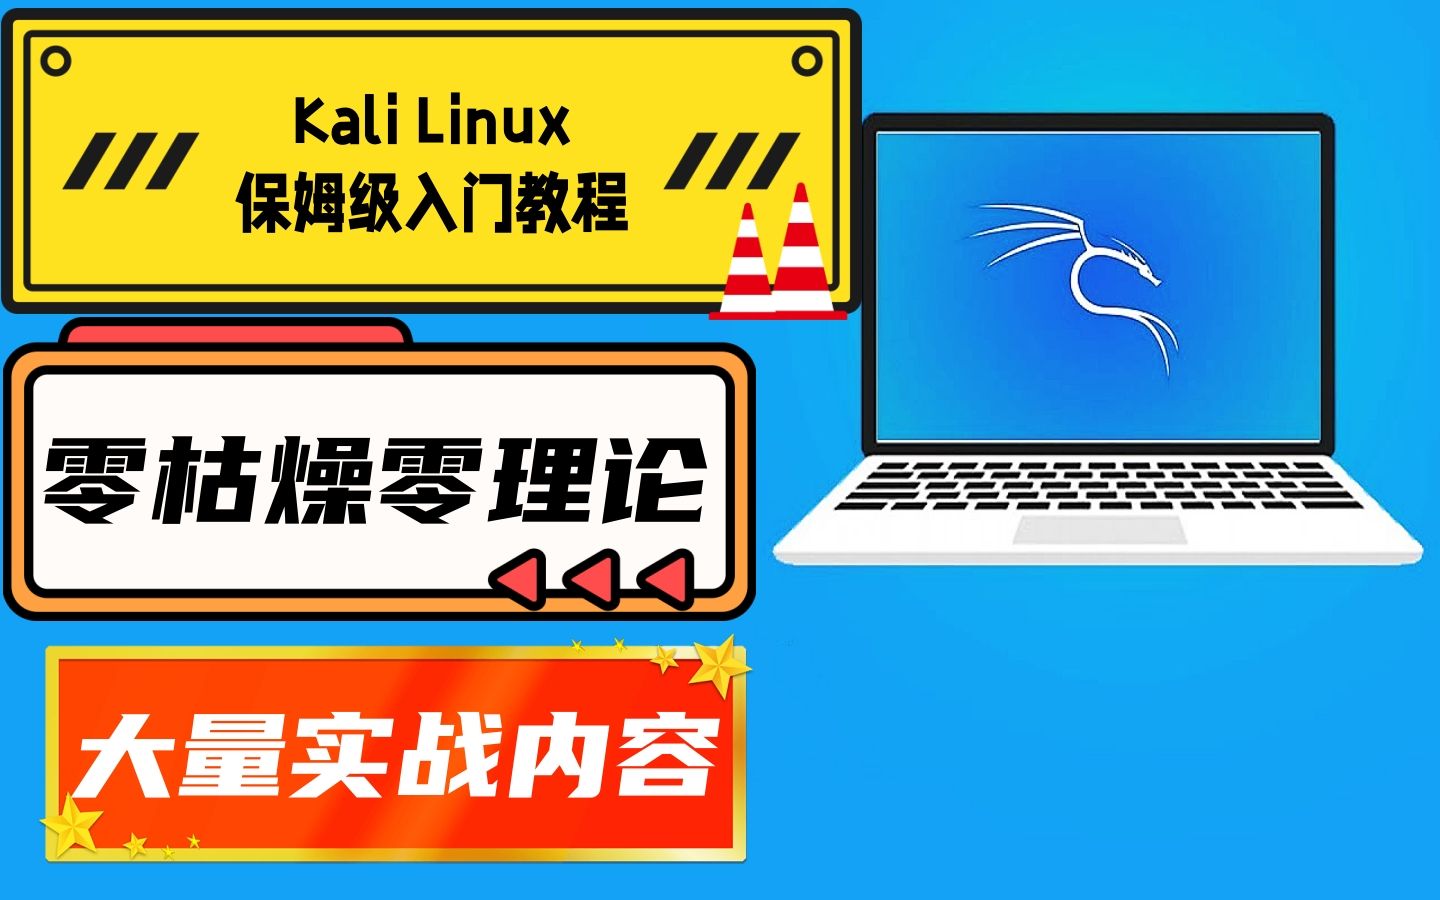 【极客之眼】全新Kali Linux零基础新手入门教程第三集